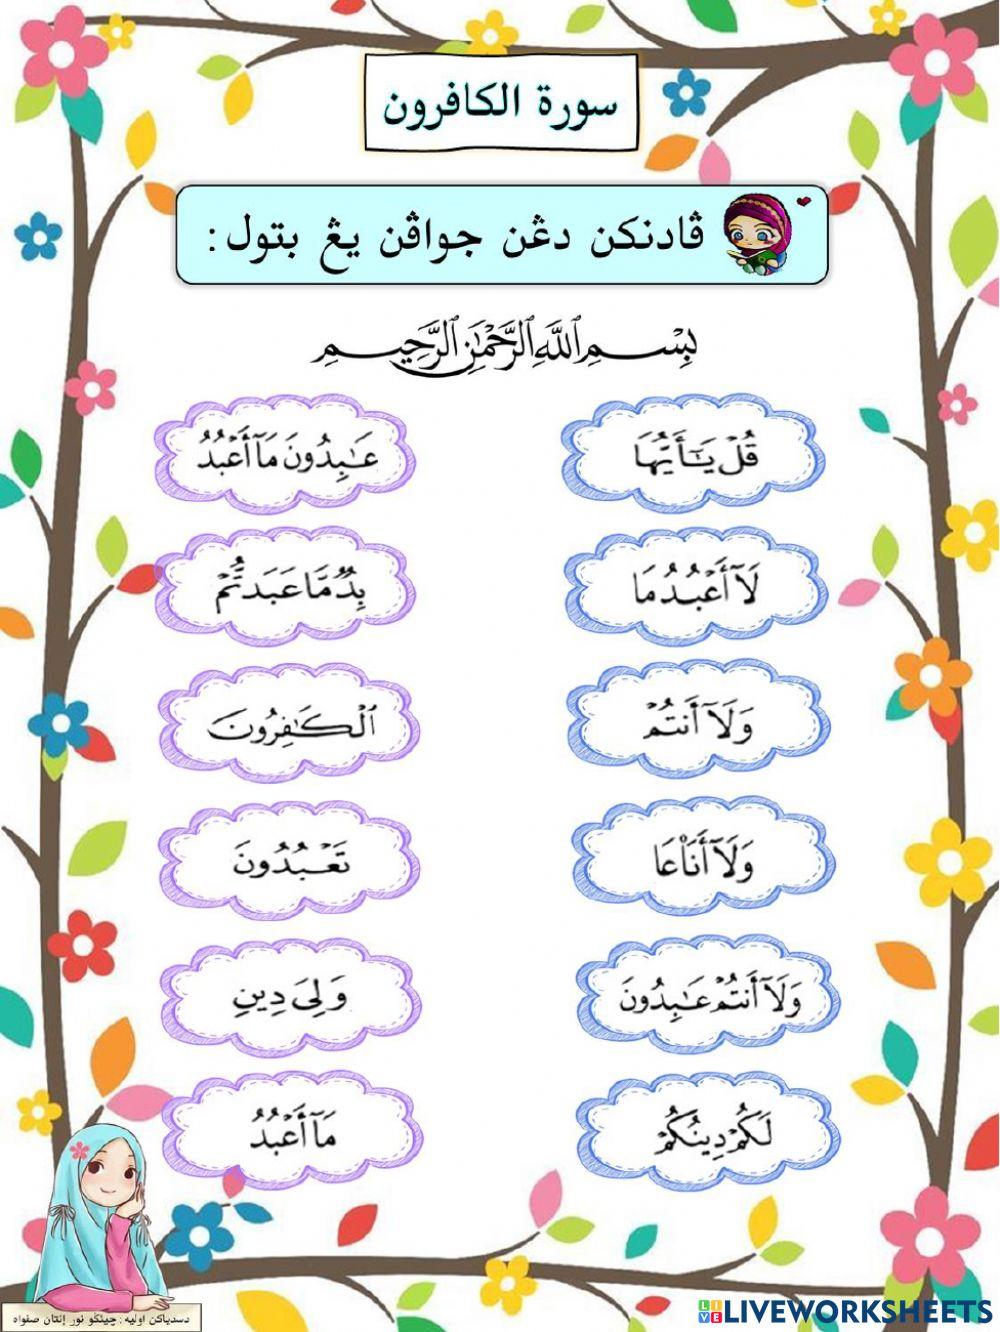 Latihan Surah Al-Kafirun